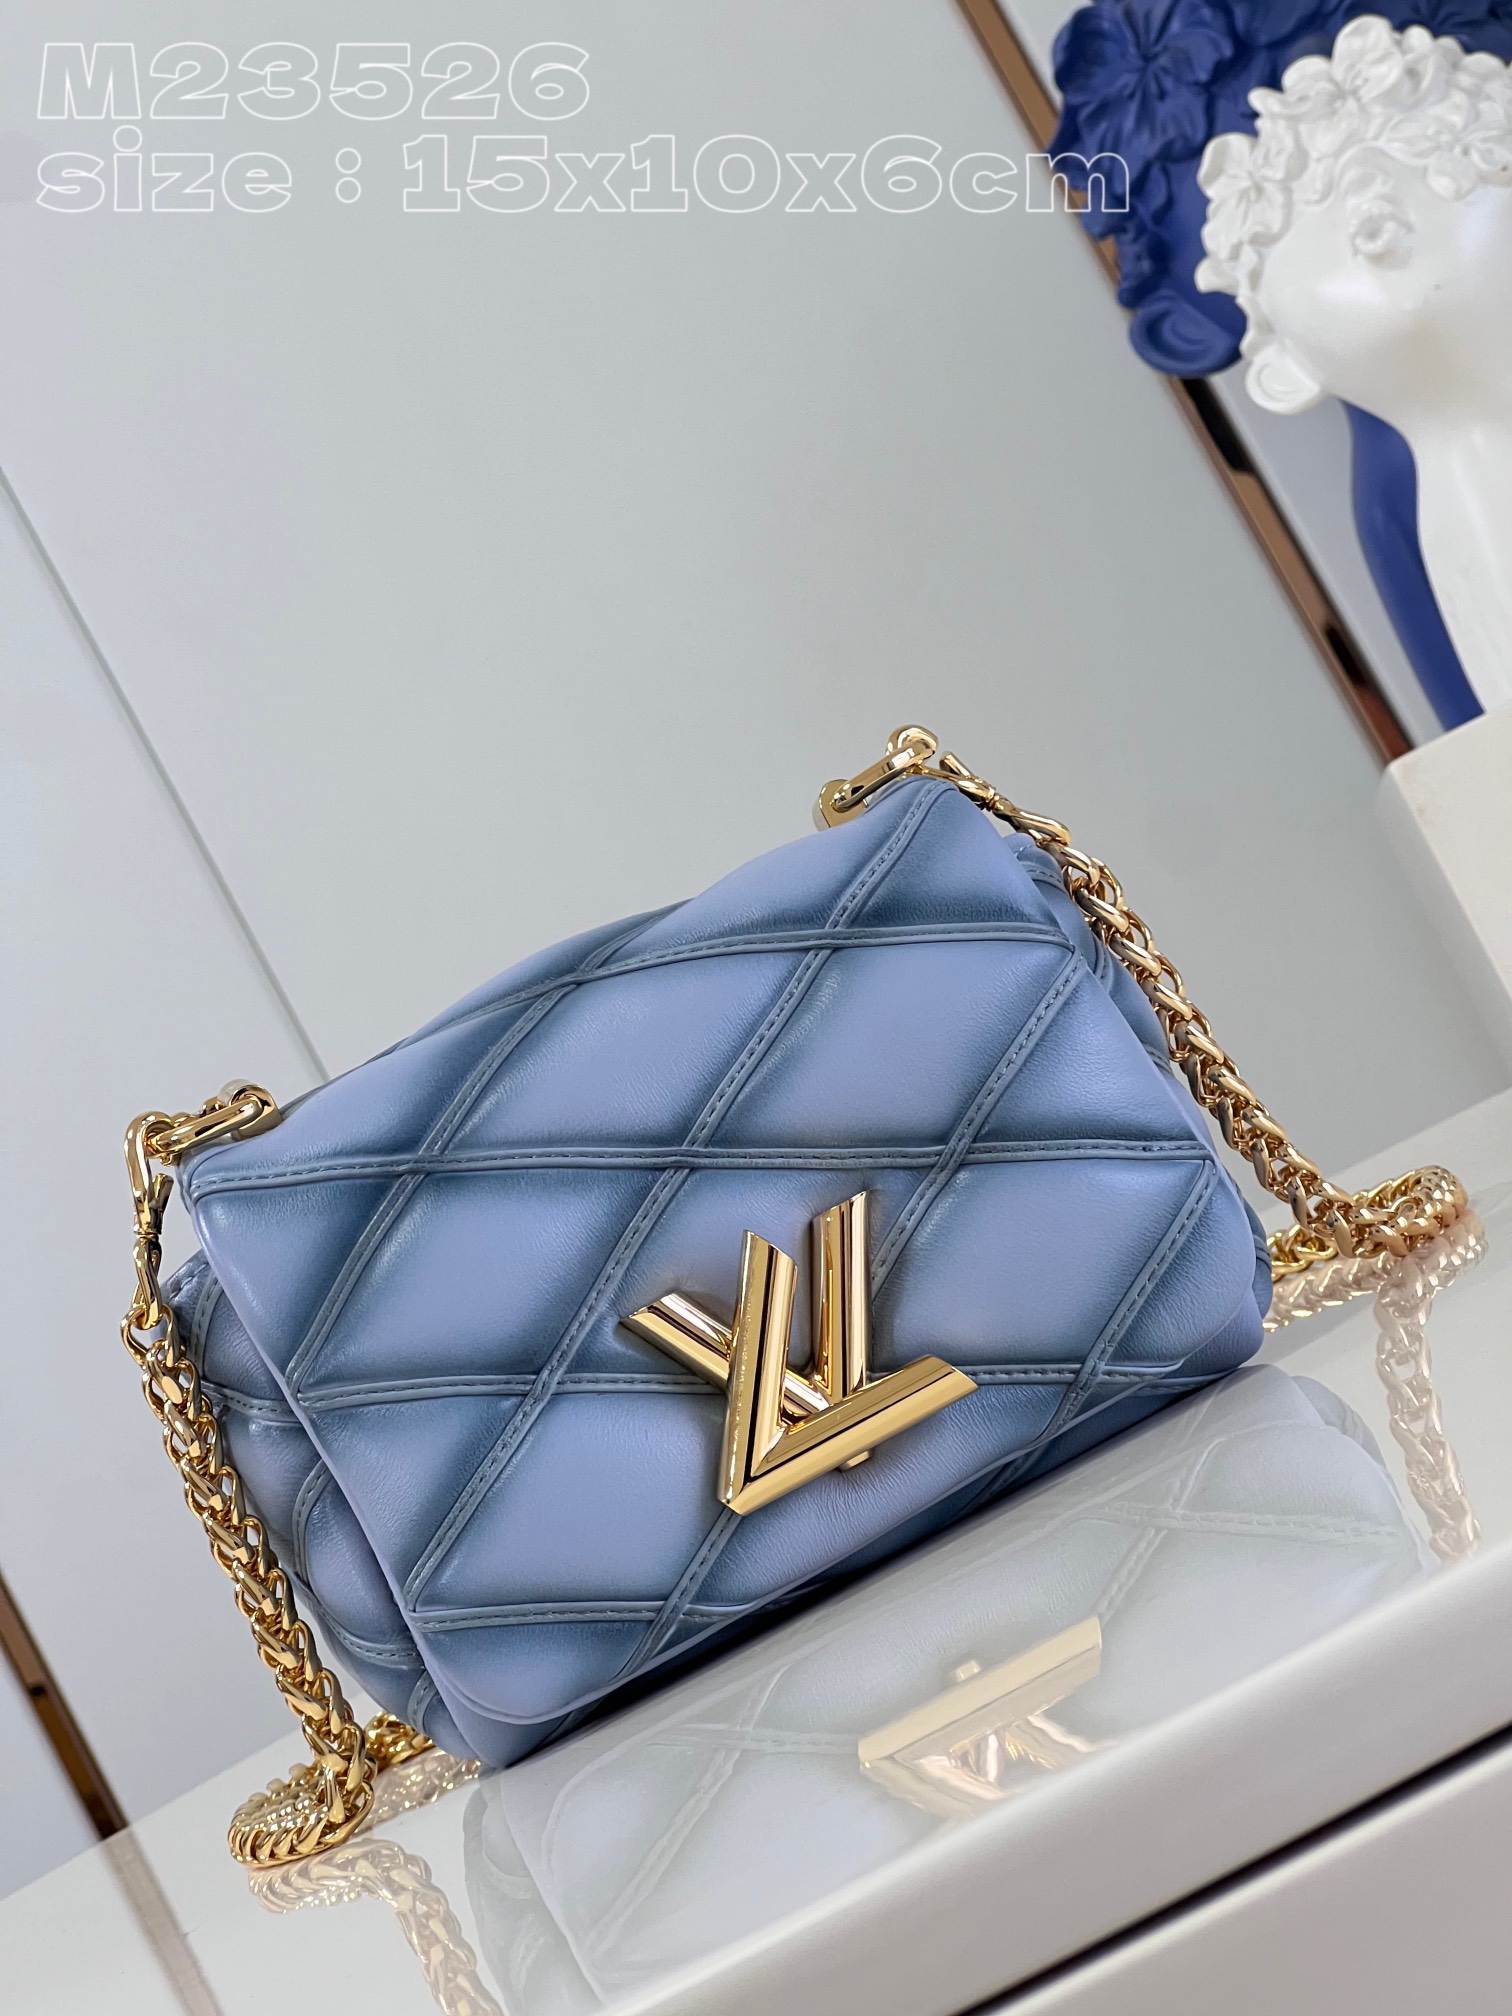 Louis Vuitton Bags Handbags Blue Cowhide Sheepskin LV Twist M23526